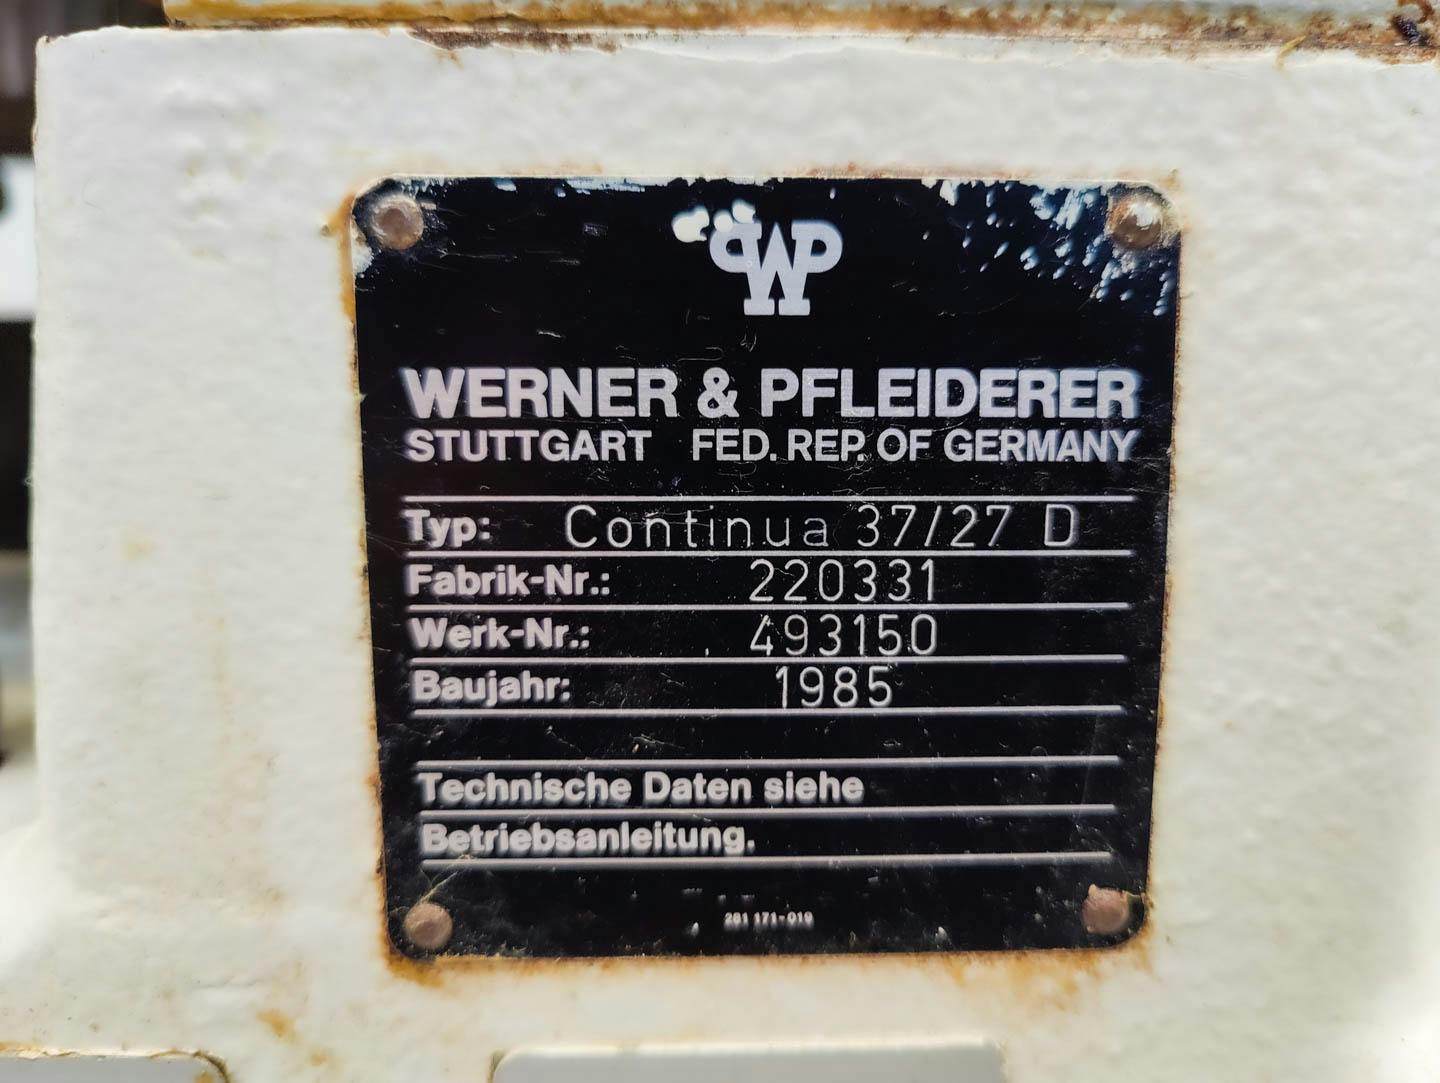 Werner & Pfleiderer Continua 37/27 D - Dubbelschroefs extruder - image 12